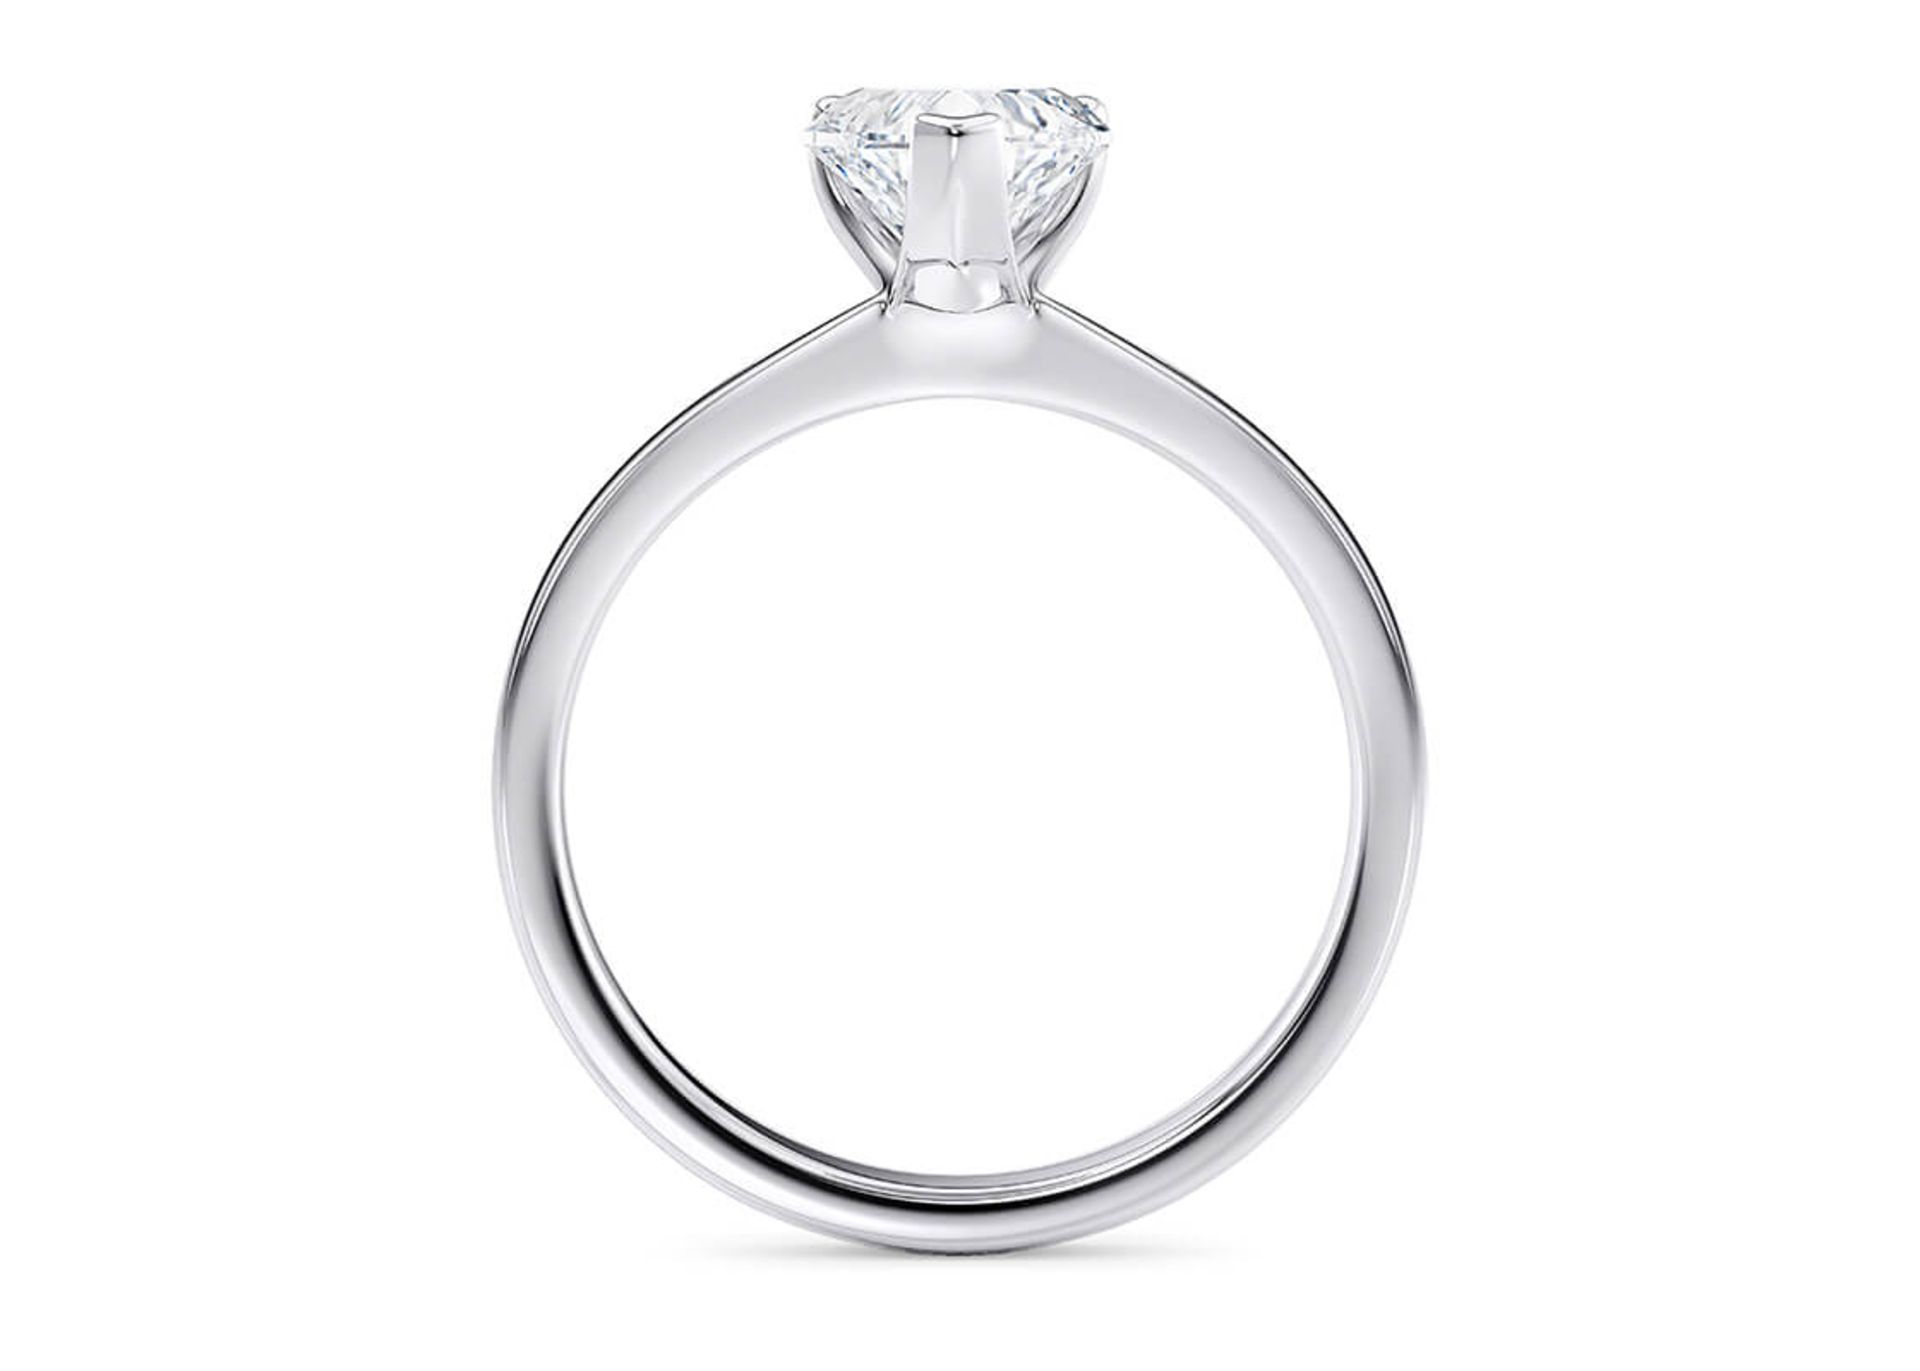 ** ON SALE ** Heart Cut Diamond Platinum Ring 4.00 Carat F Colour VS2 Clarity EX EX - IGI - Image 2 of 4